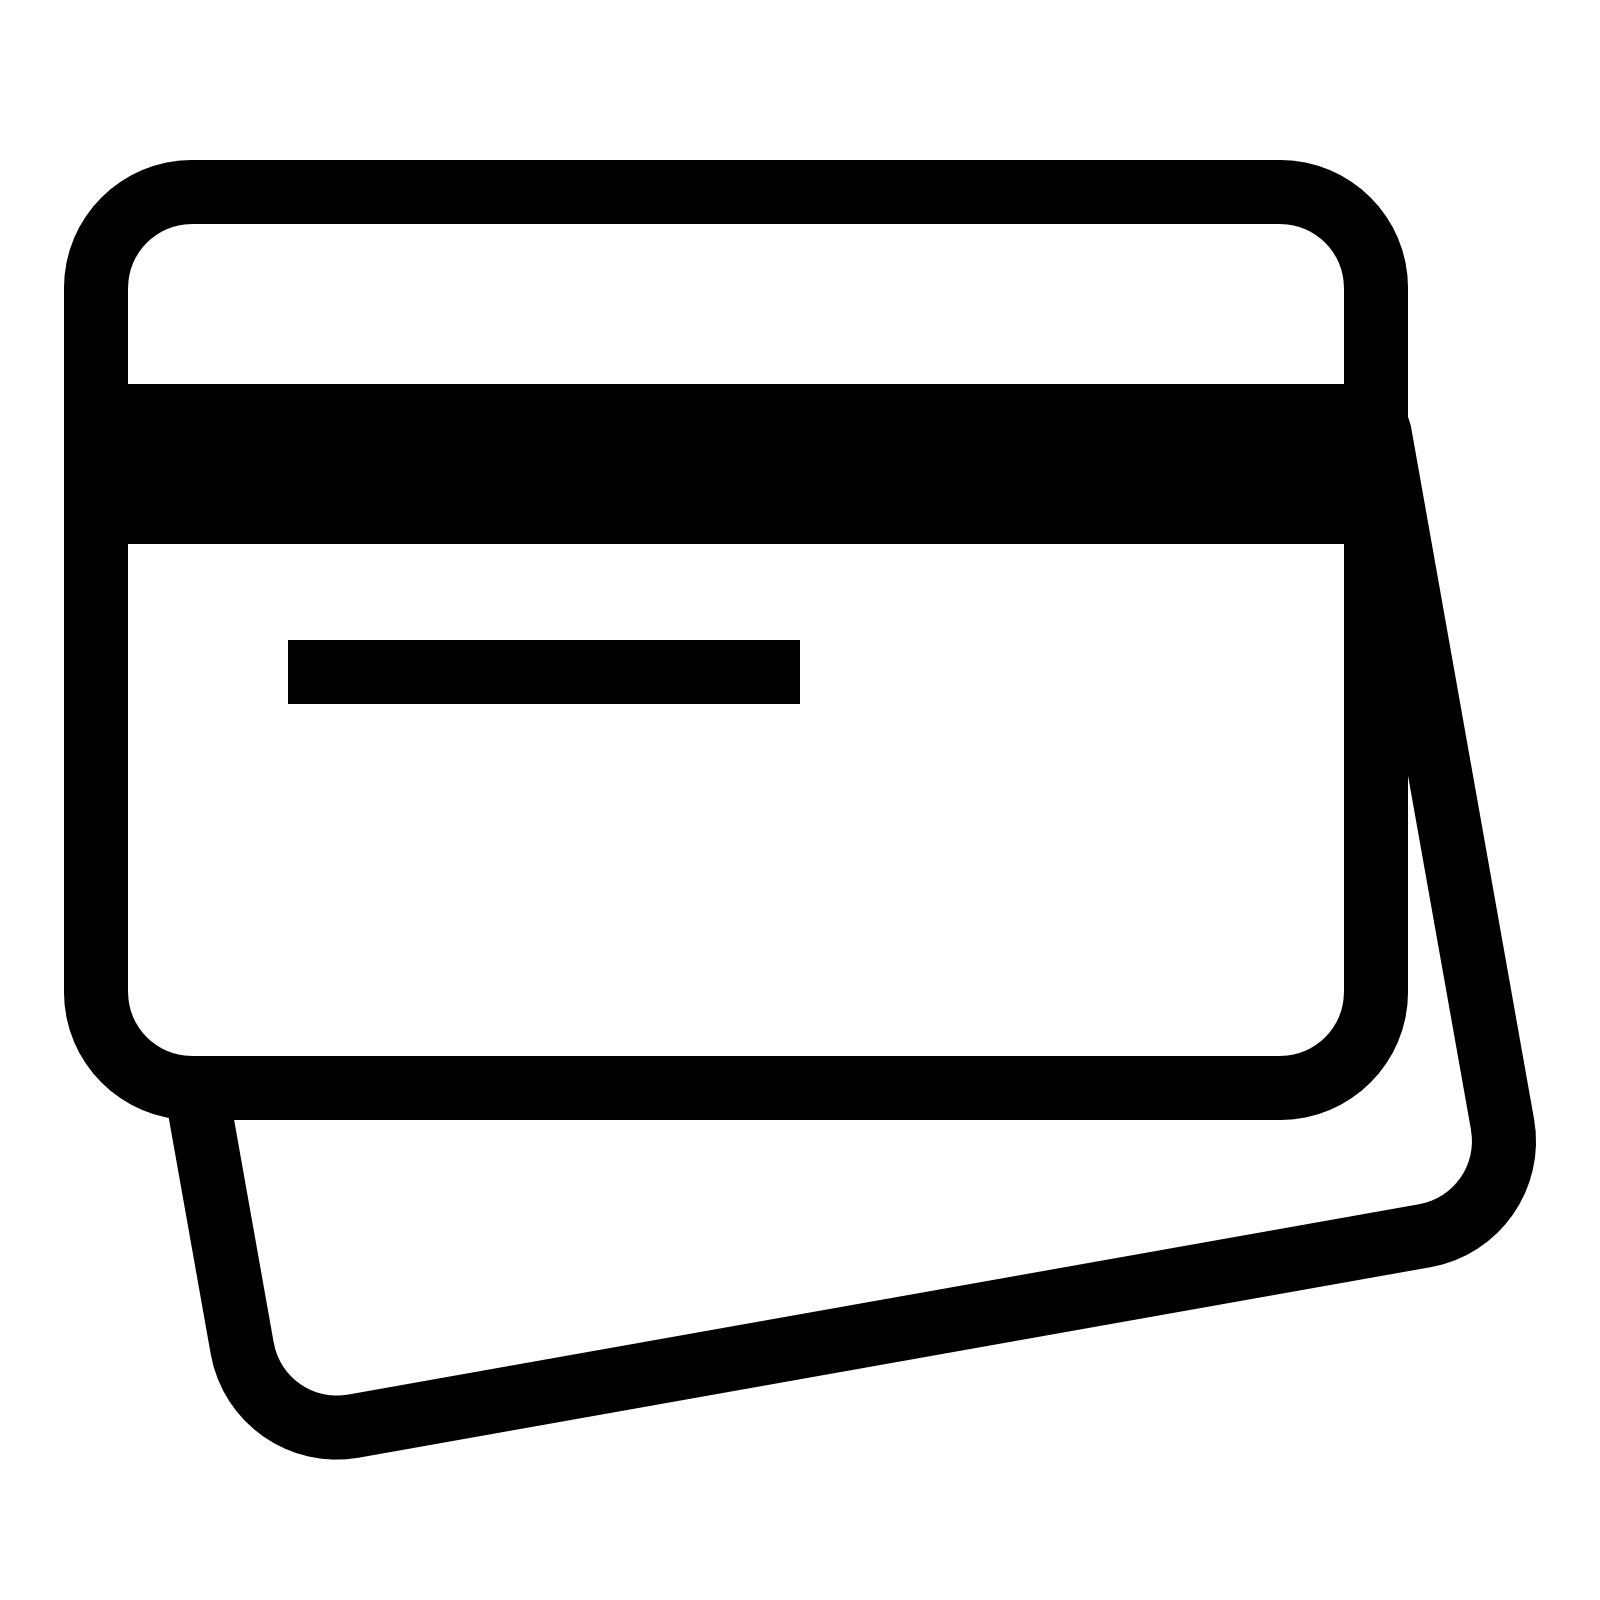 บัตรเครดิต PNG รูปภาพฟรี